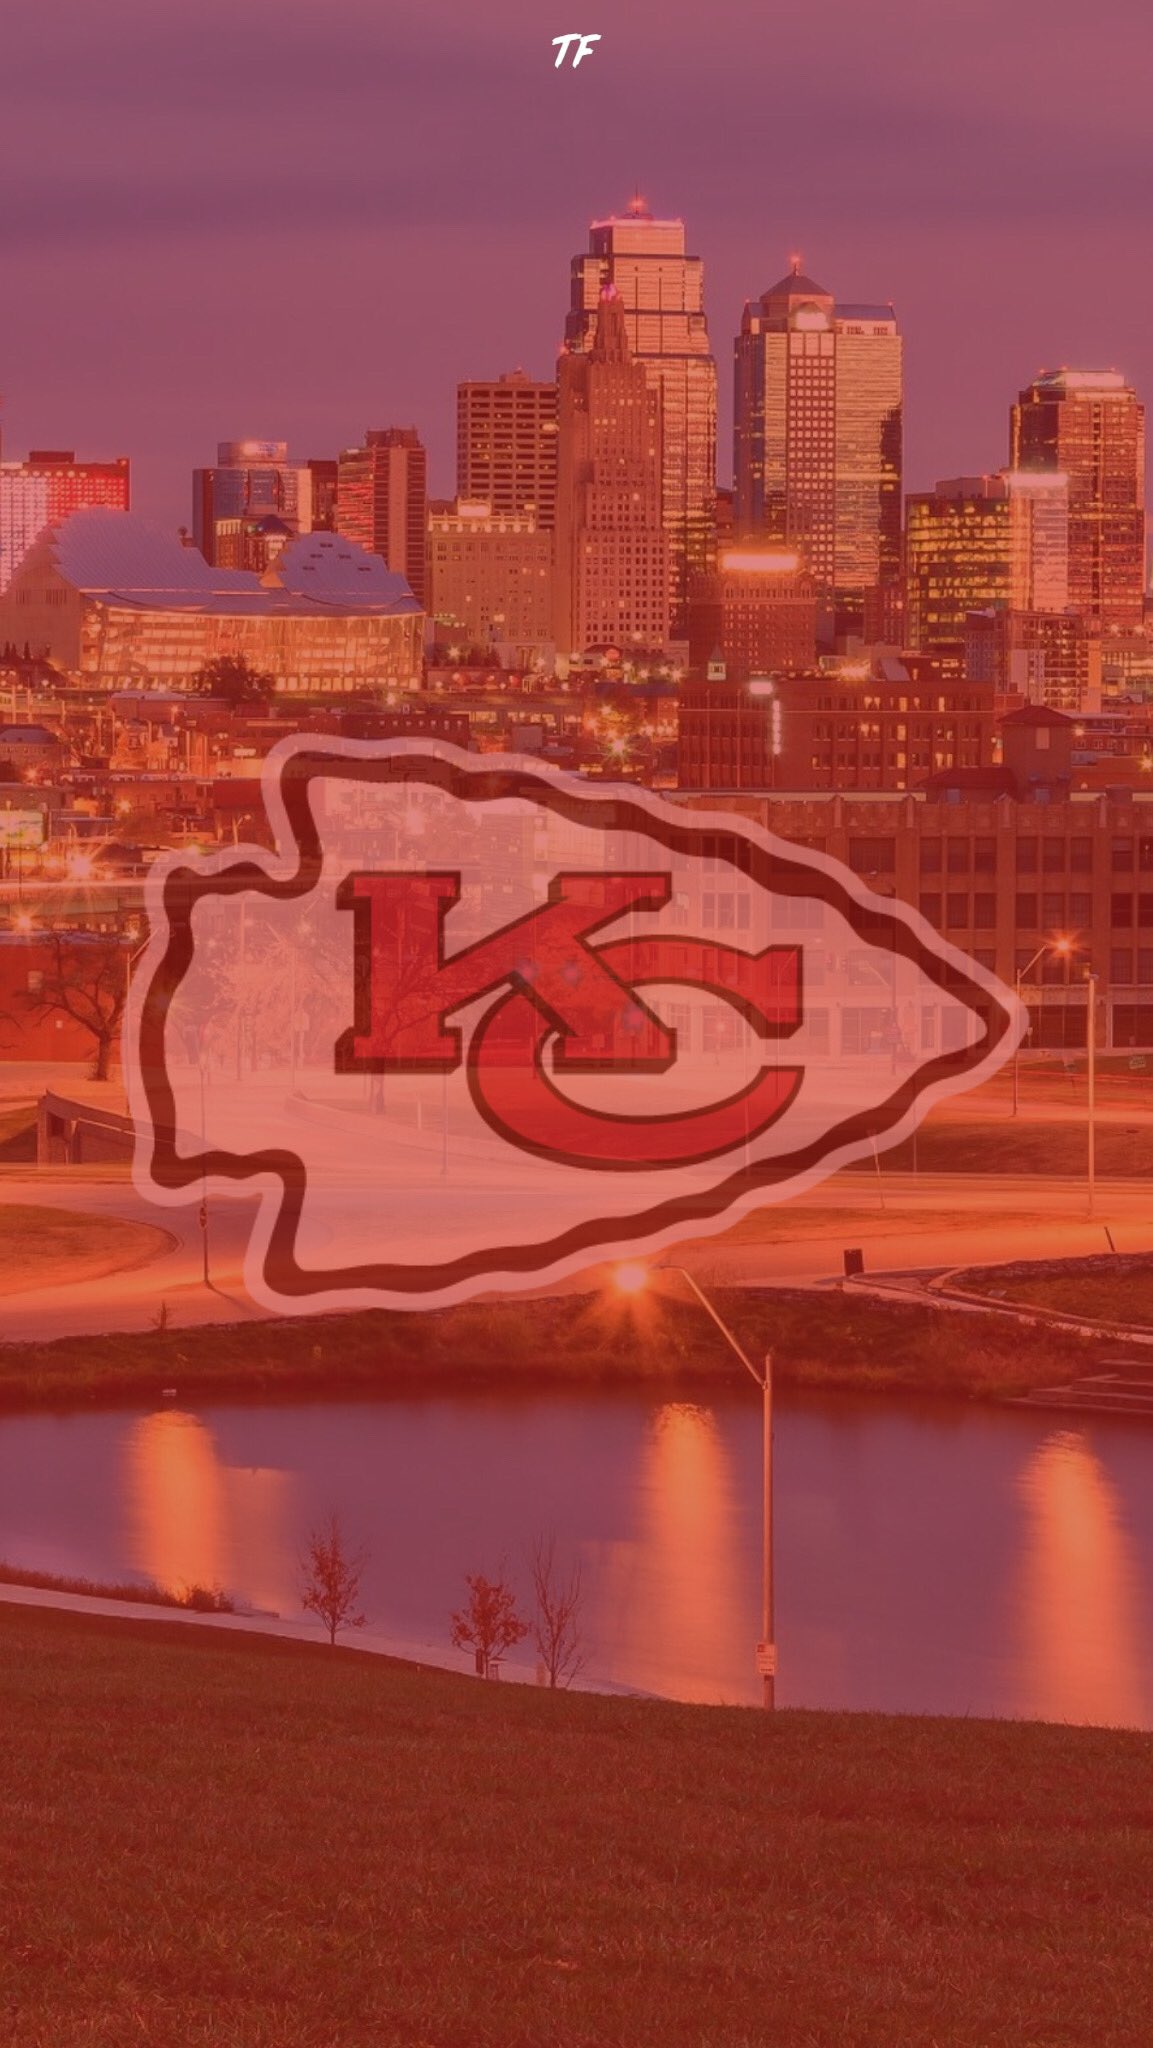 Kansas City Chiefs 2021 wallpaper